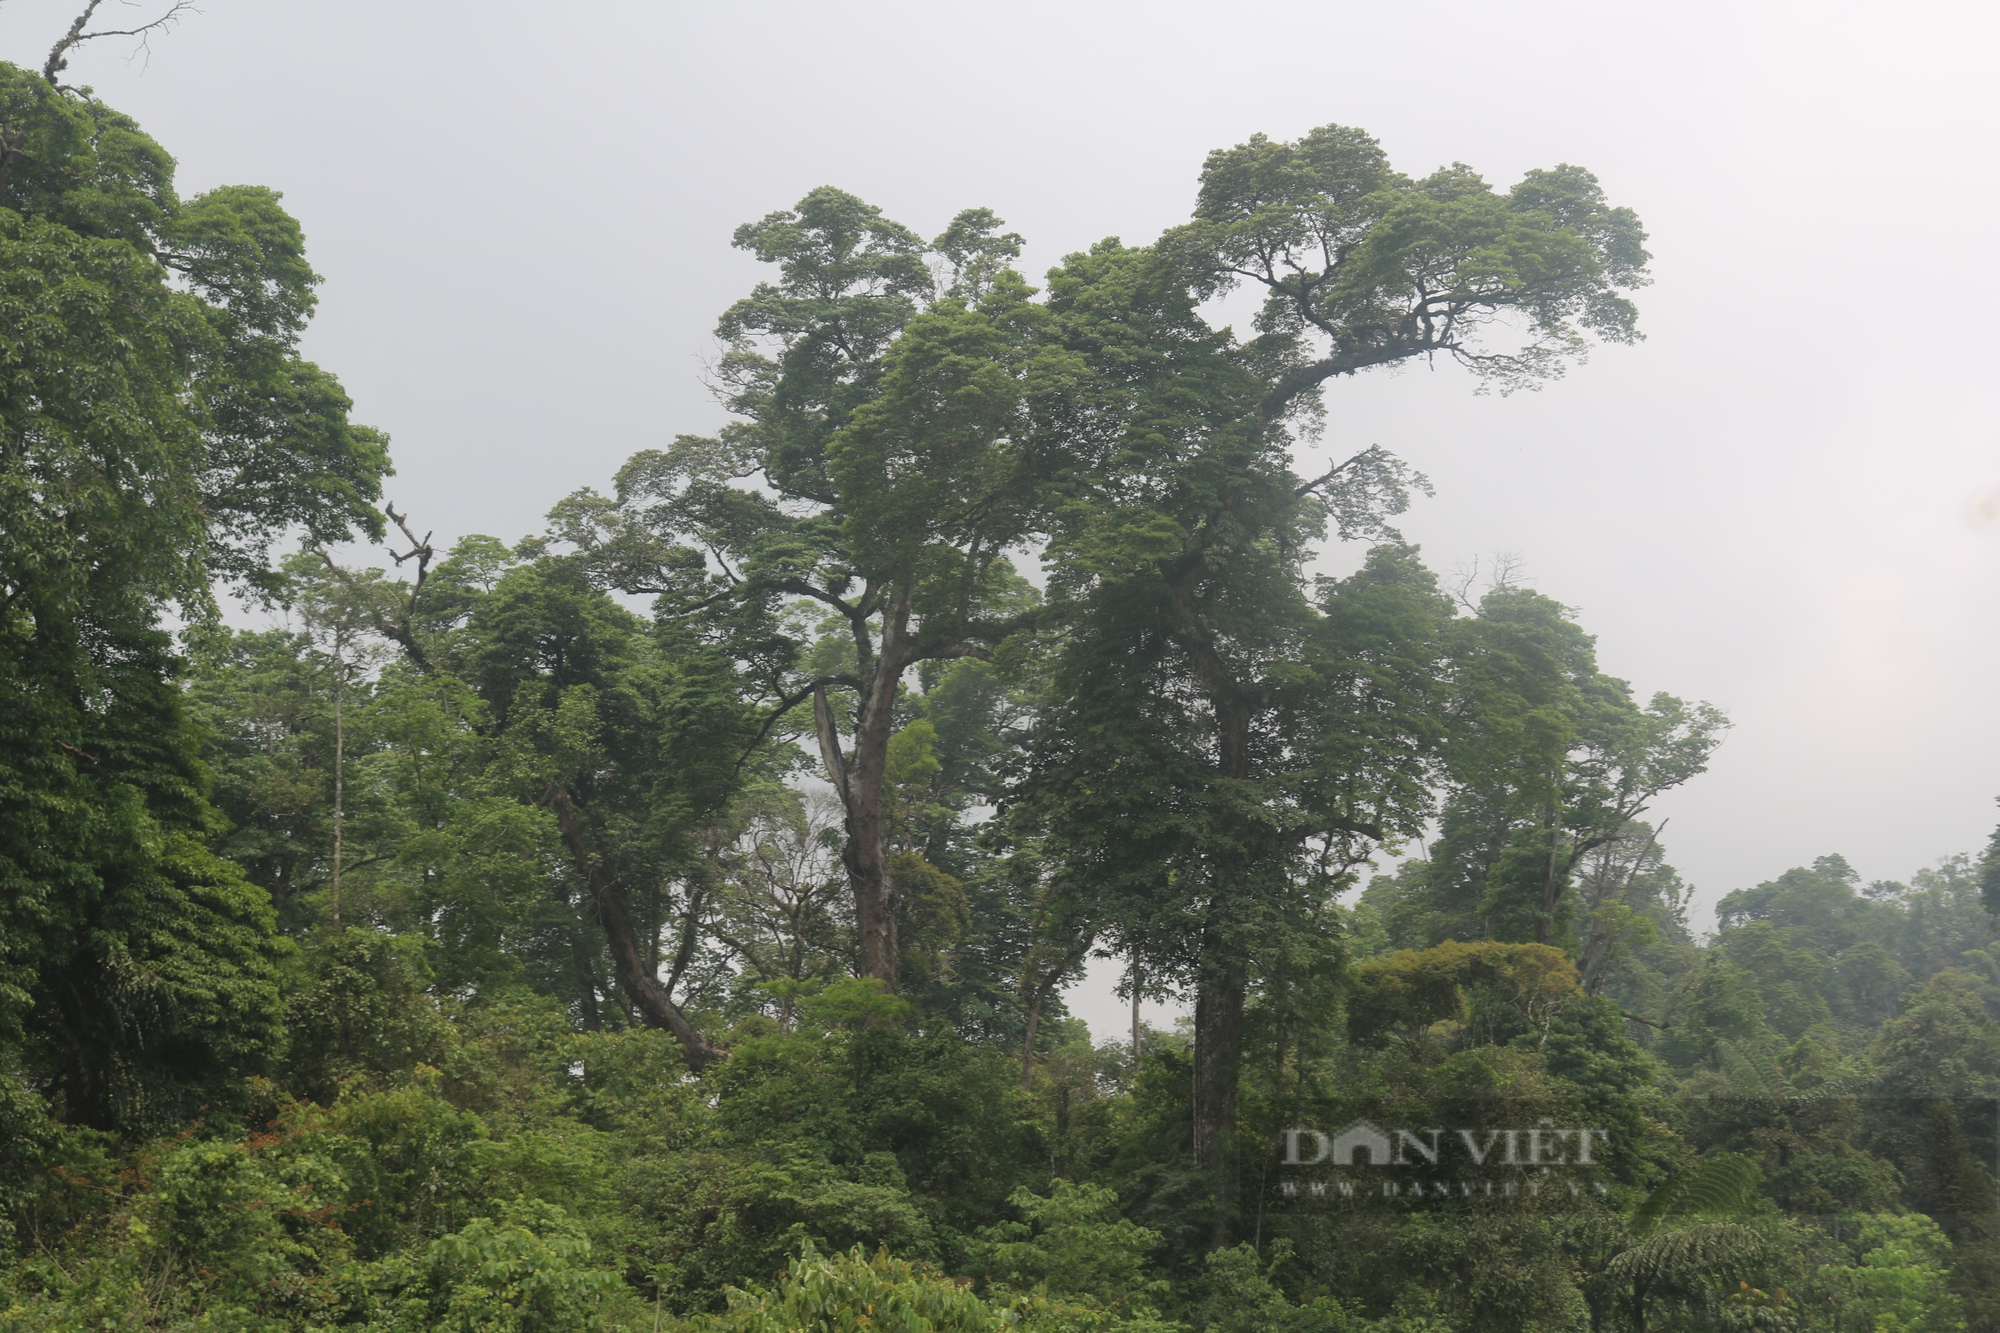 Một khu rừng ở Lào Cai thấy la liệt cây cổ thụ tuổi thọ hàng trăm năm, có cây đã 1.000 tuổi?- Ảnh 1.